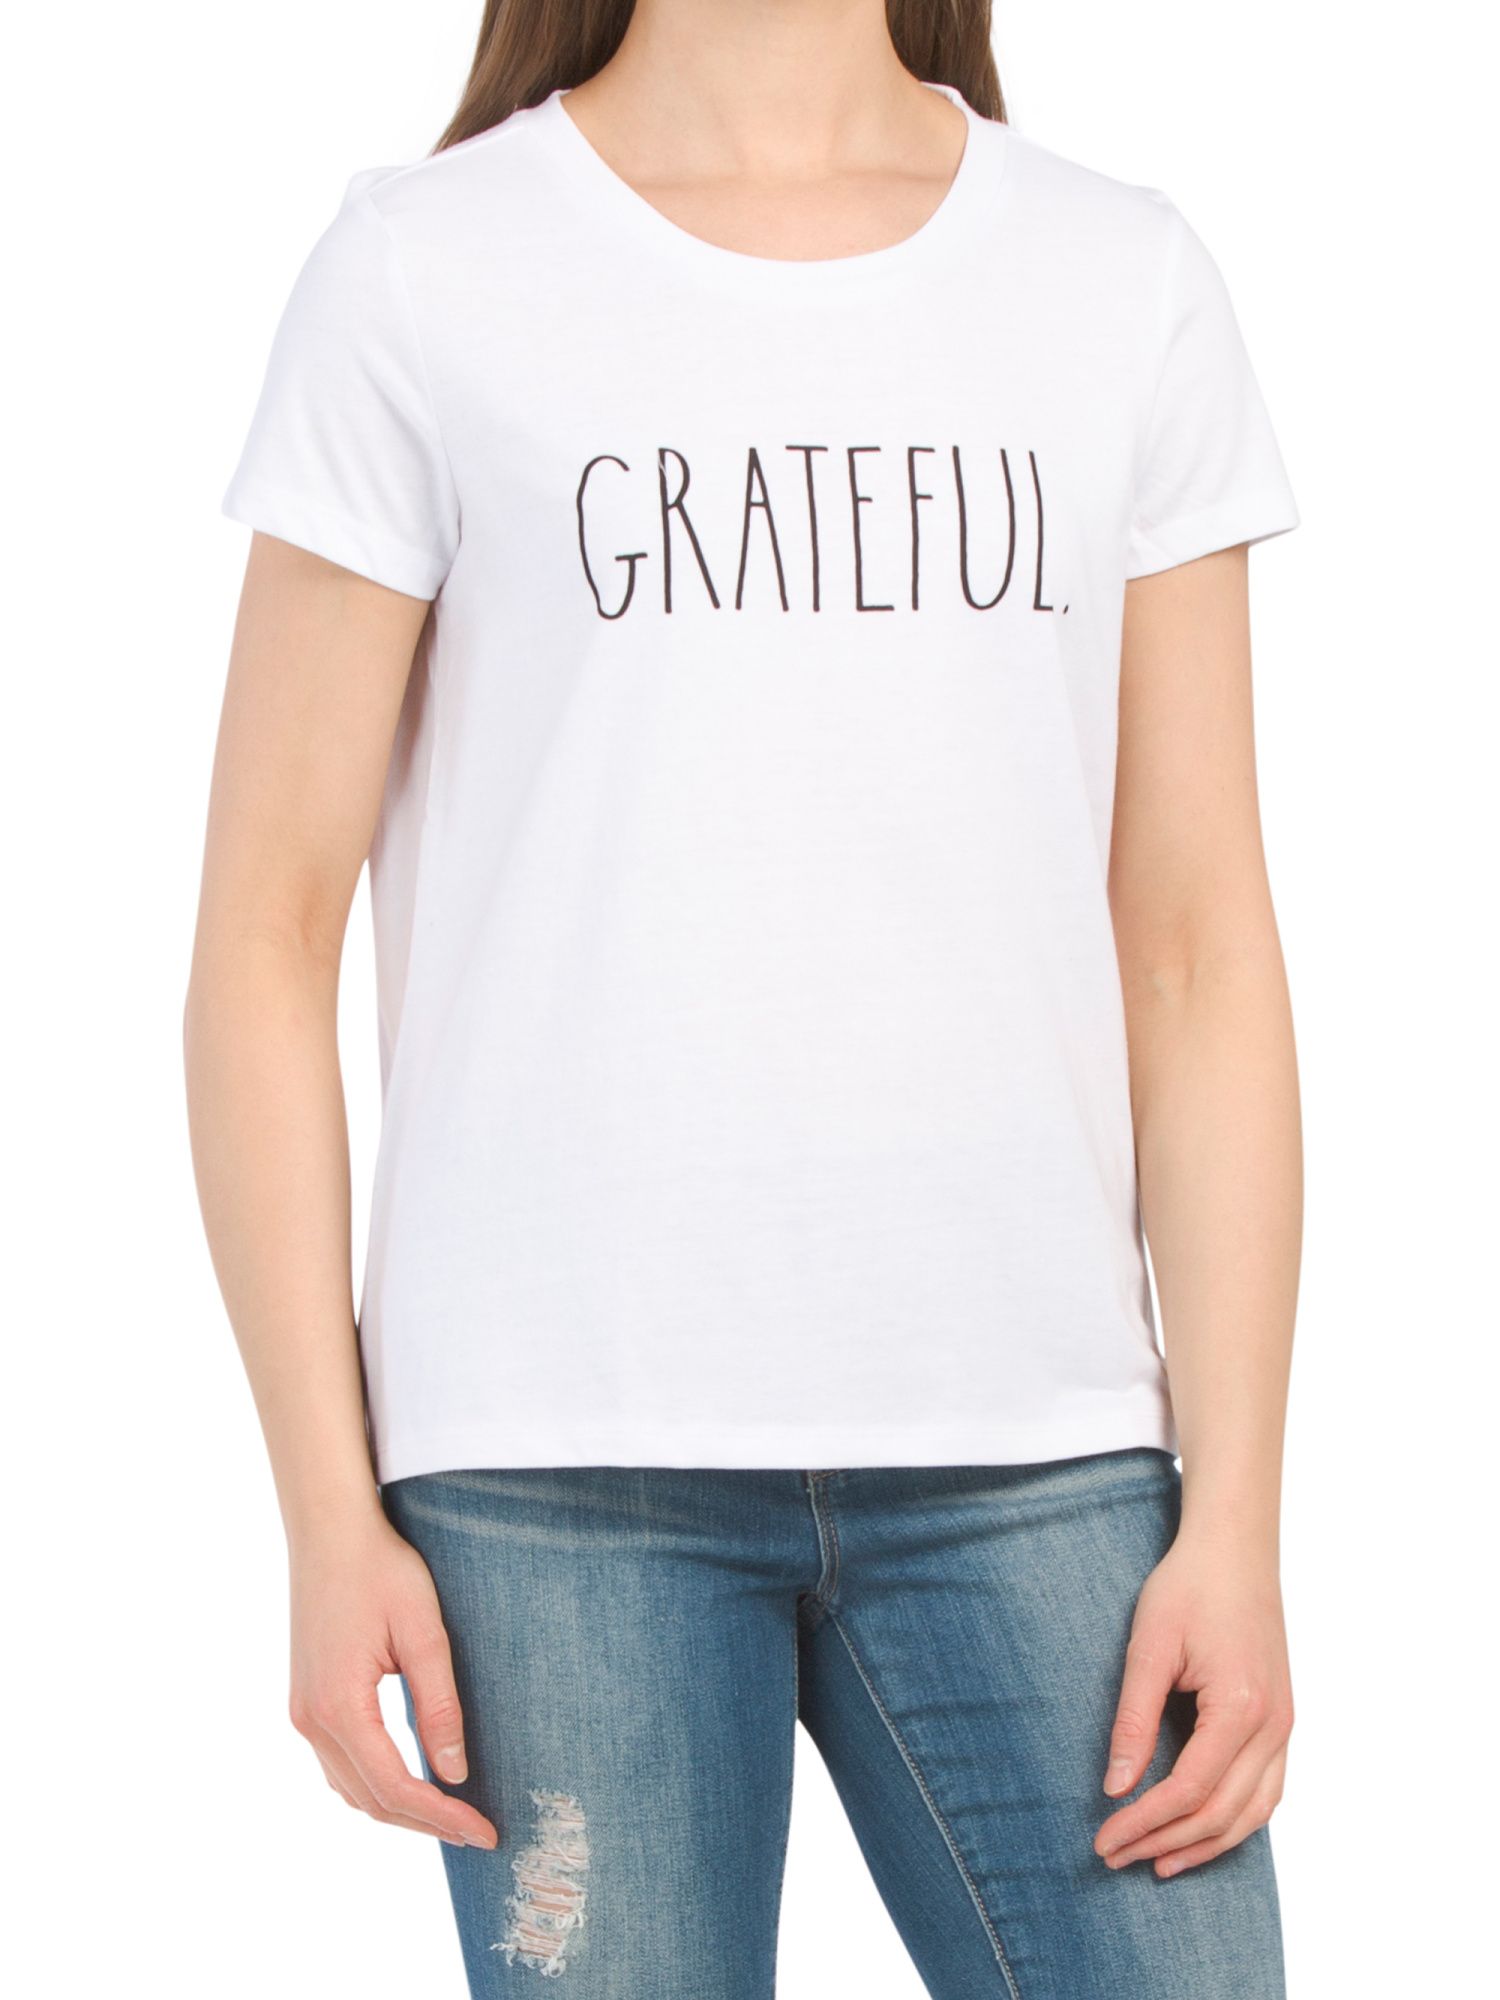 Grateful T-shirt | TJ Maxx